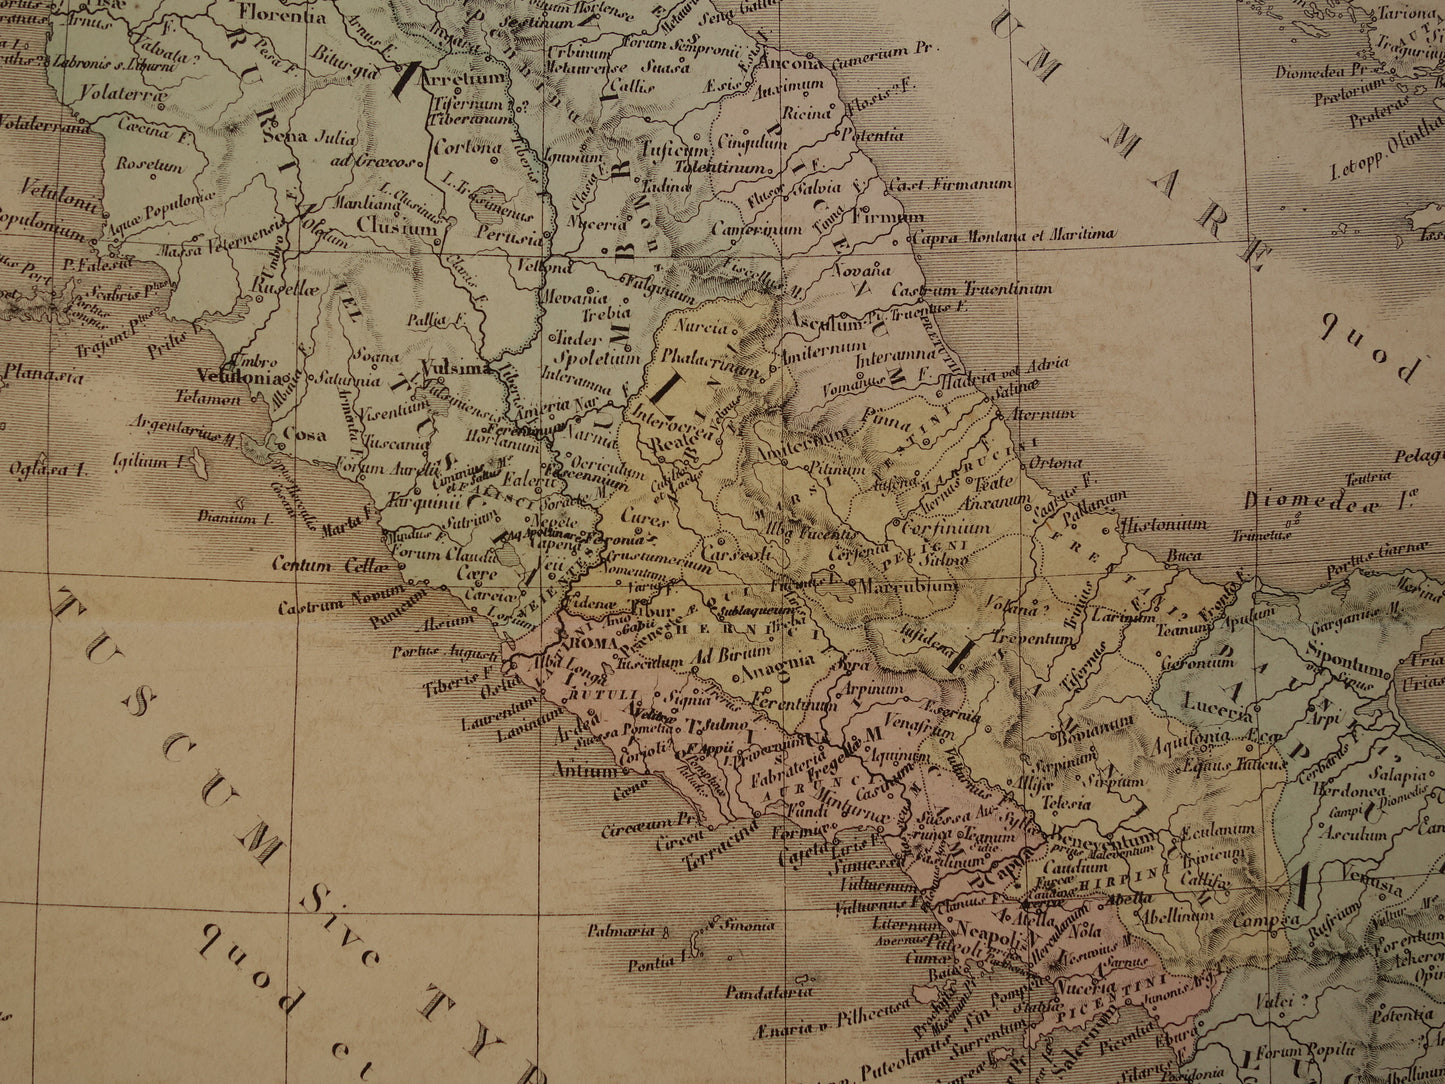 ITALIE grote oude Franse kaart van Italië in de klassieke oudheid uit 1875 originele antieke handgekleurde landkaart